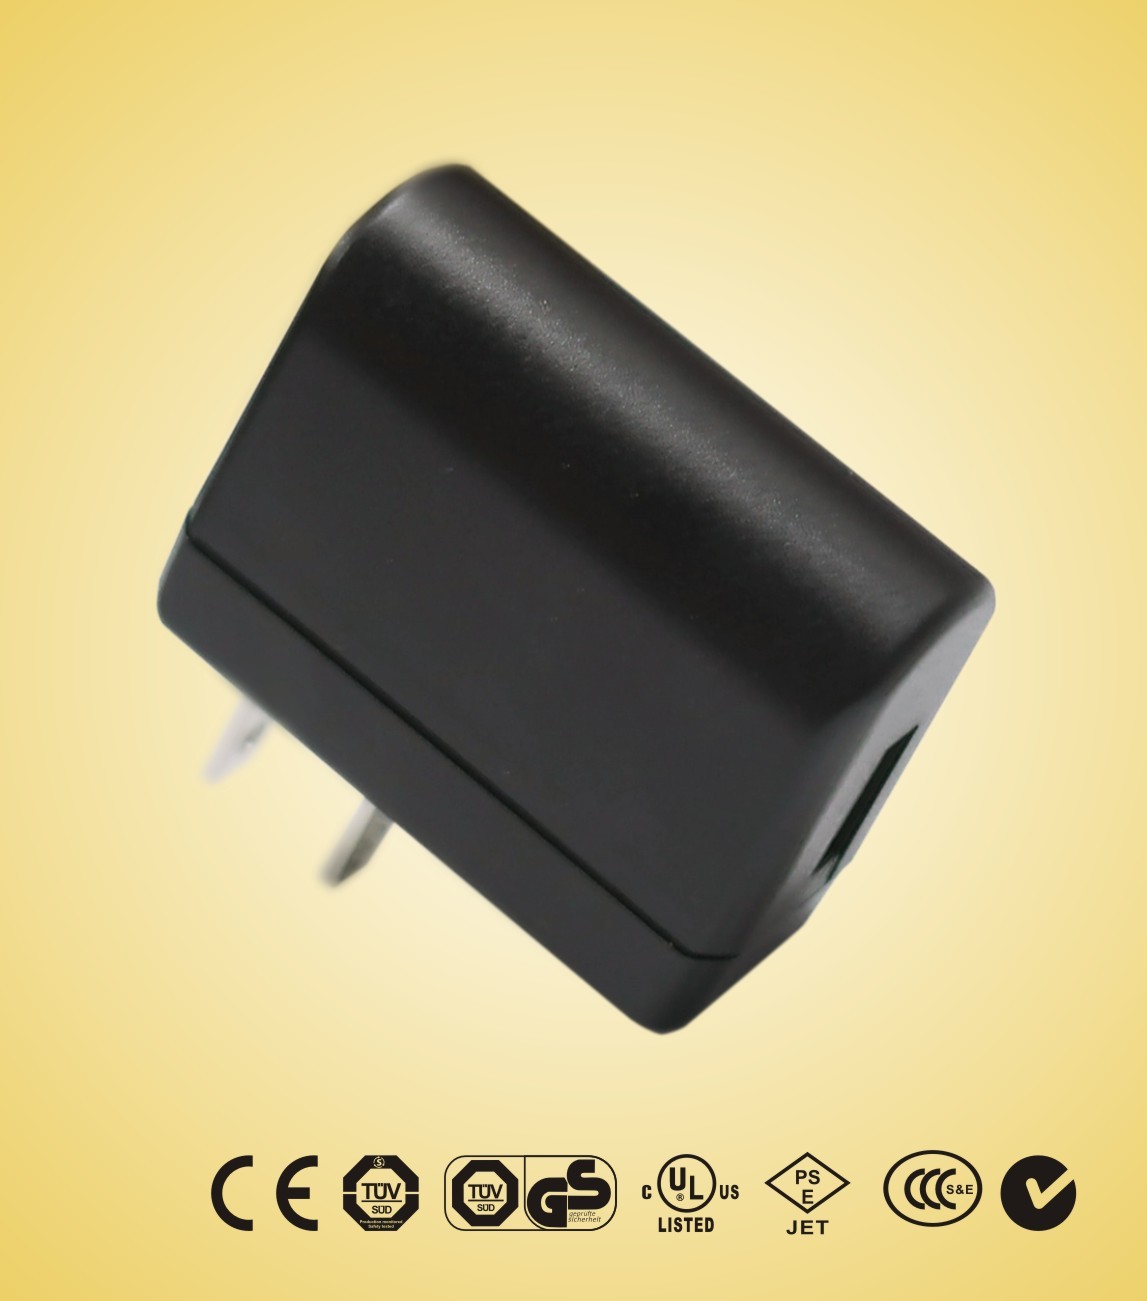 গ্রিন পাওয়ার সাপ্লাই 3.5W 120V এসি ইউনিভার্সাল ইউএসবি পাওয়ার অ্যাডাপ্টার সেট-টপ-বক্স, ADSL- এর, চার্জারের